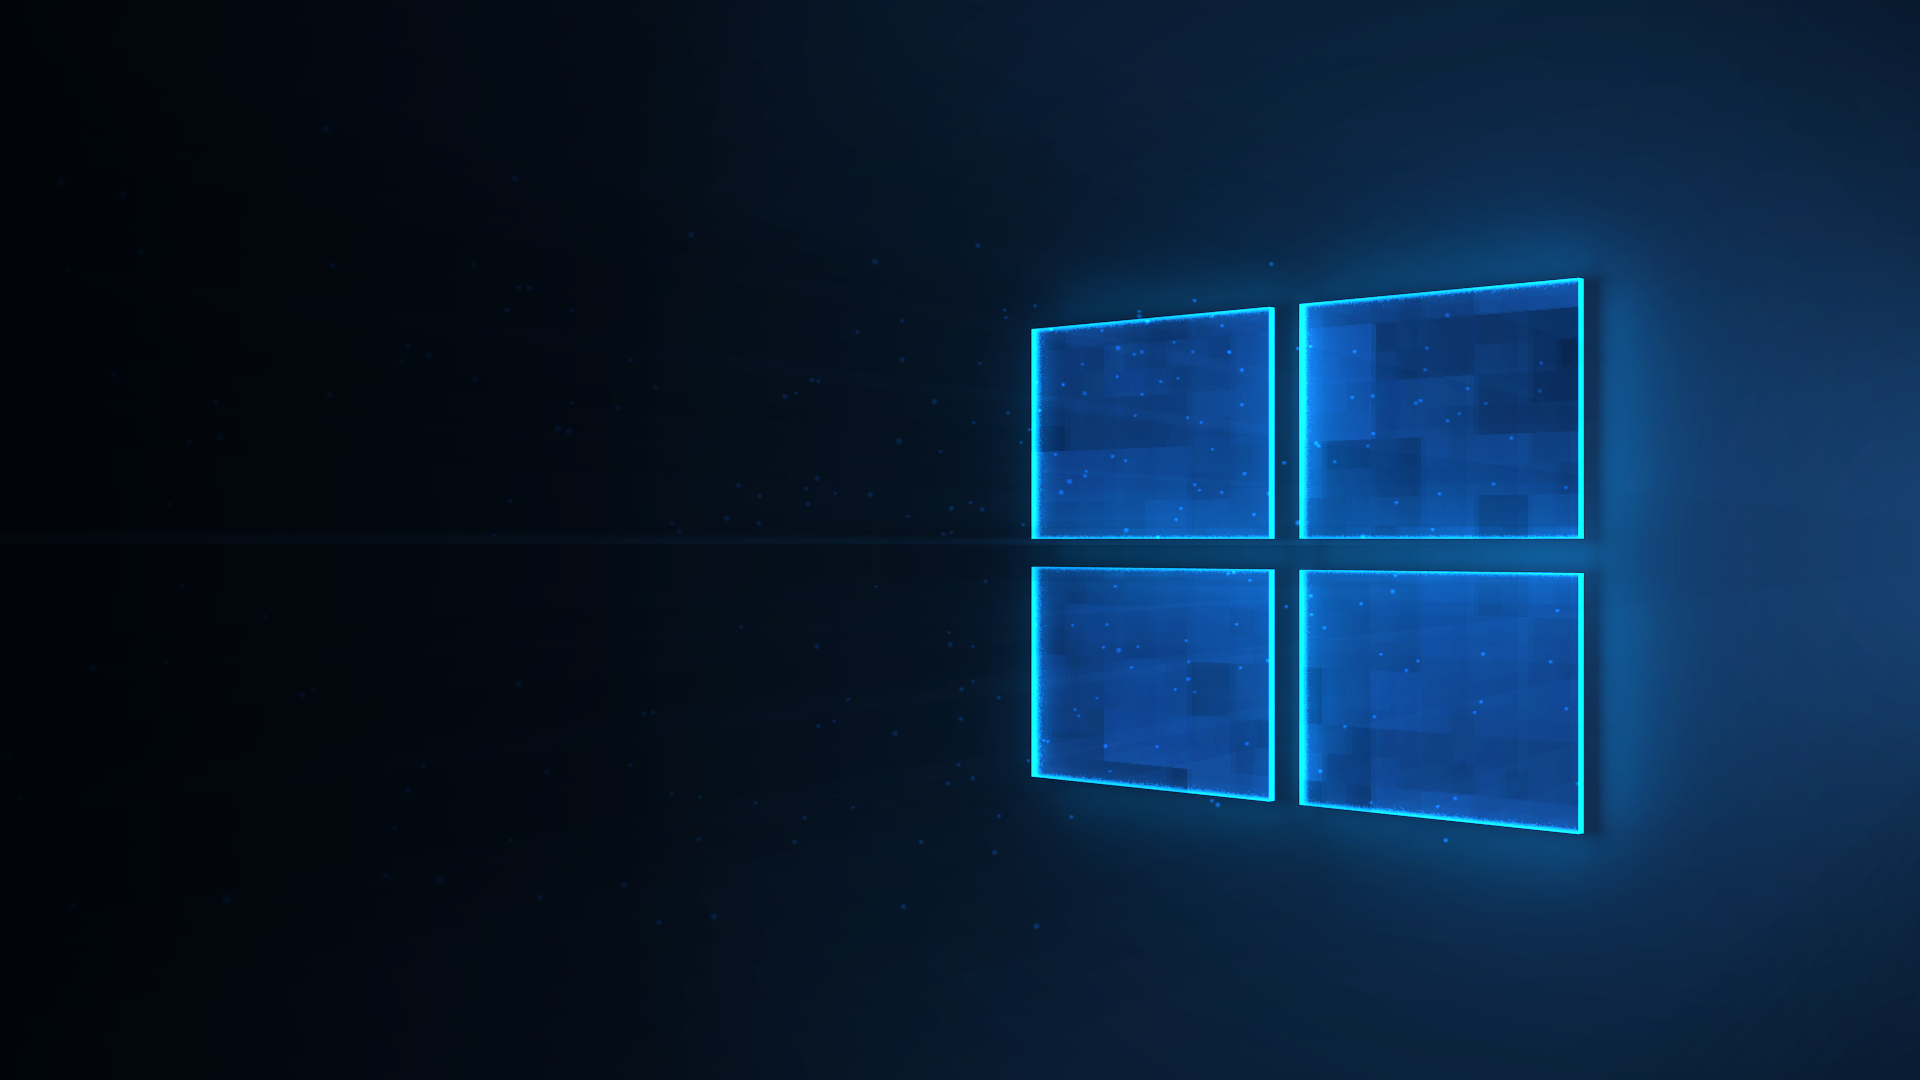 Hình nền Win 10 đẹp – Hình nền đẹp cho Windows 10